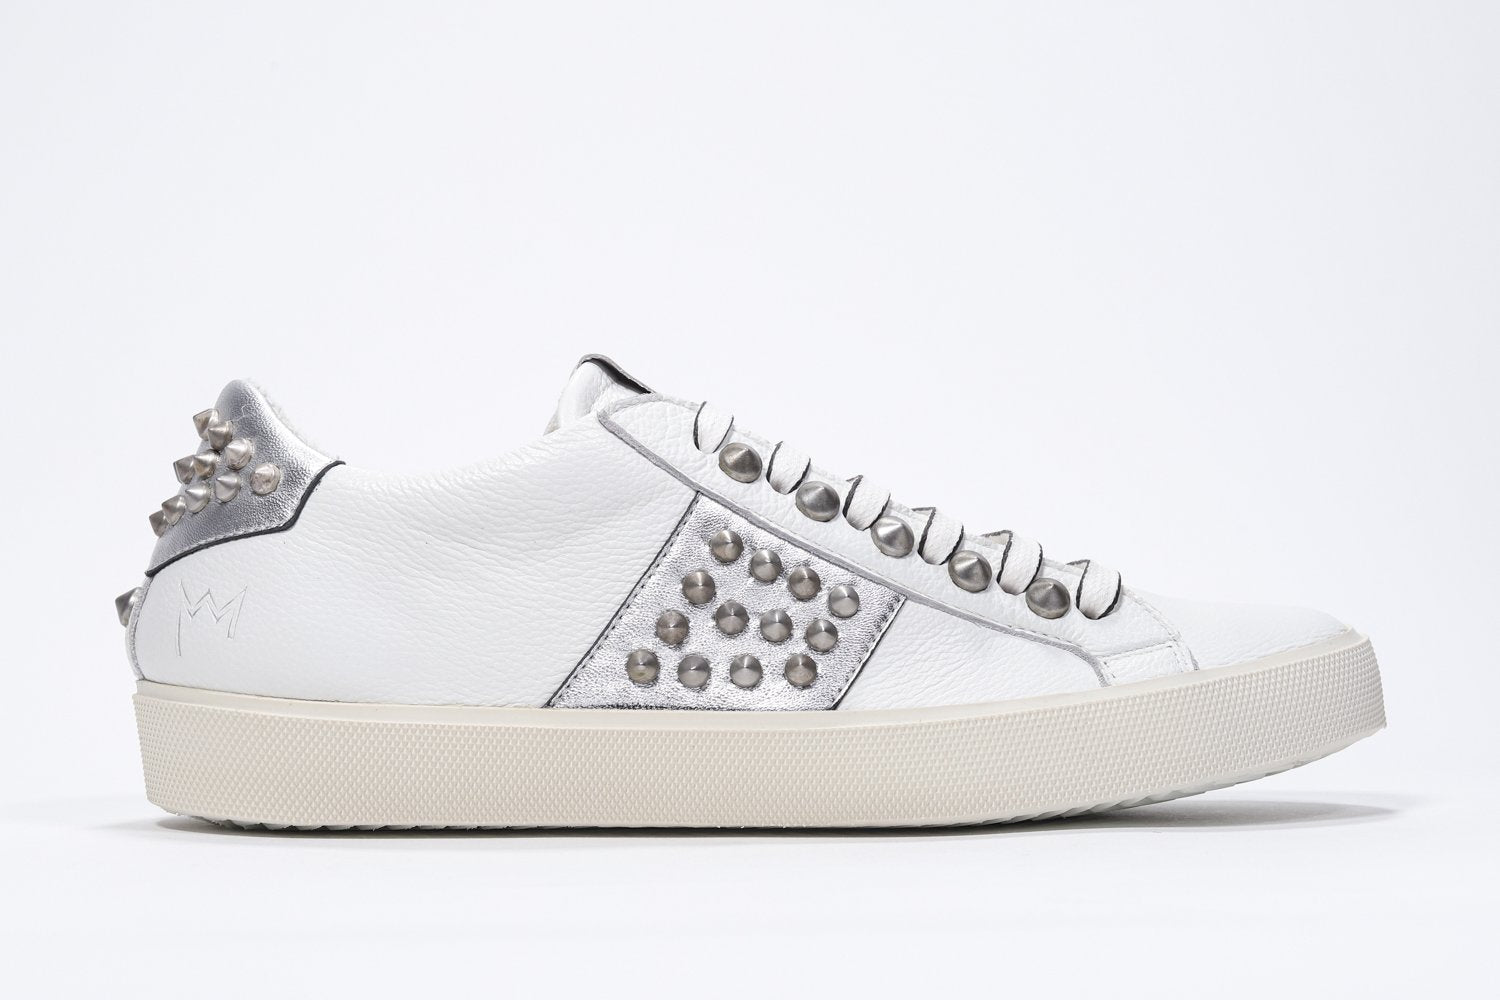 Profilo laterale di BASSE bianco e argento metallizzato sneaker. Tomaia in pelle con borchie e suola in gomma vintage.